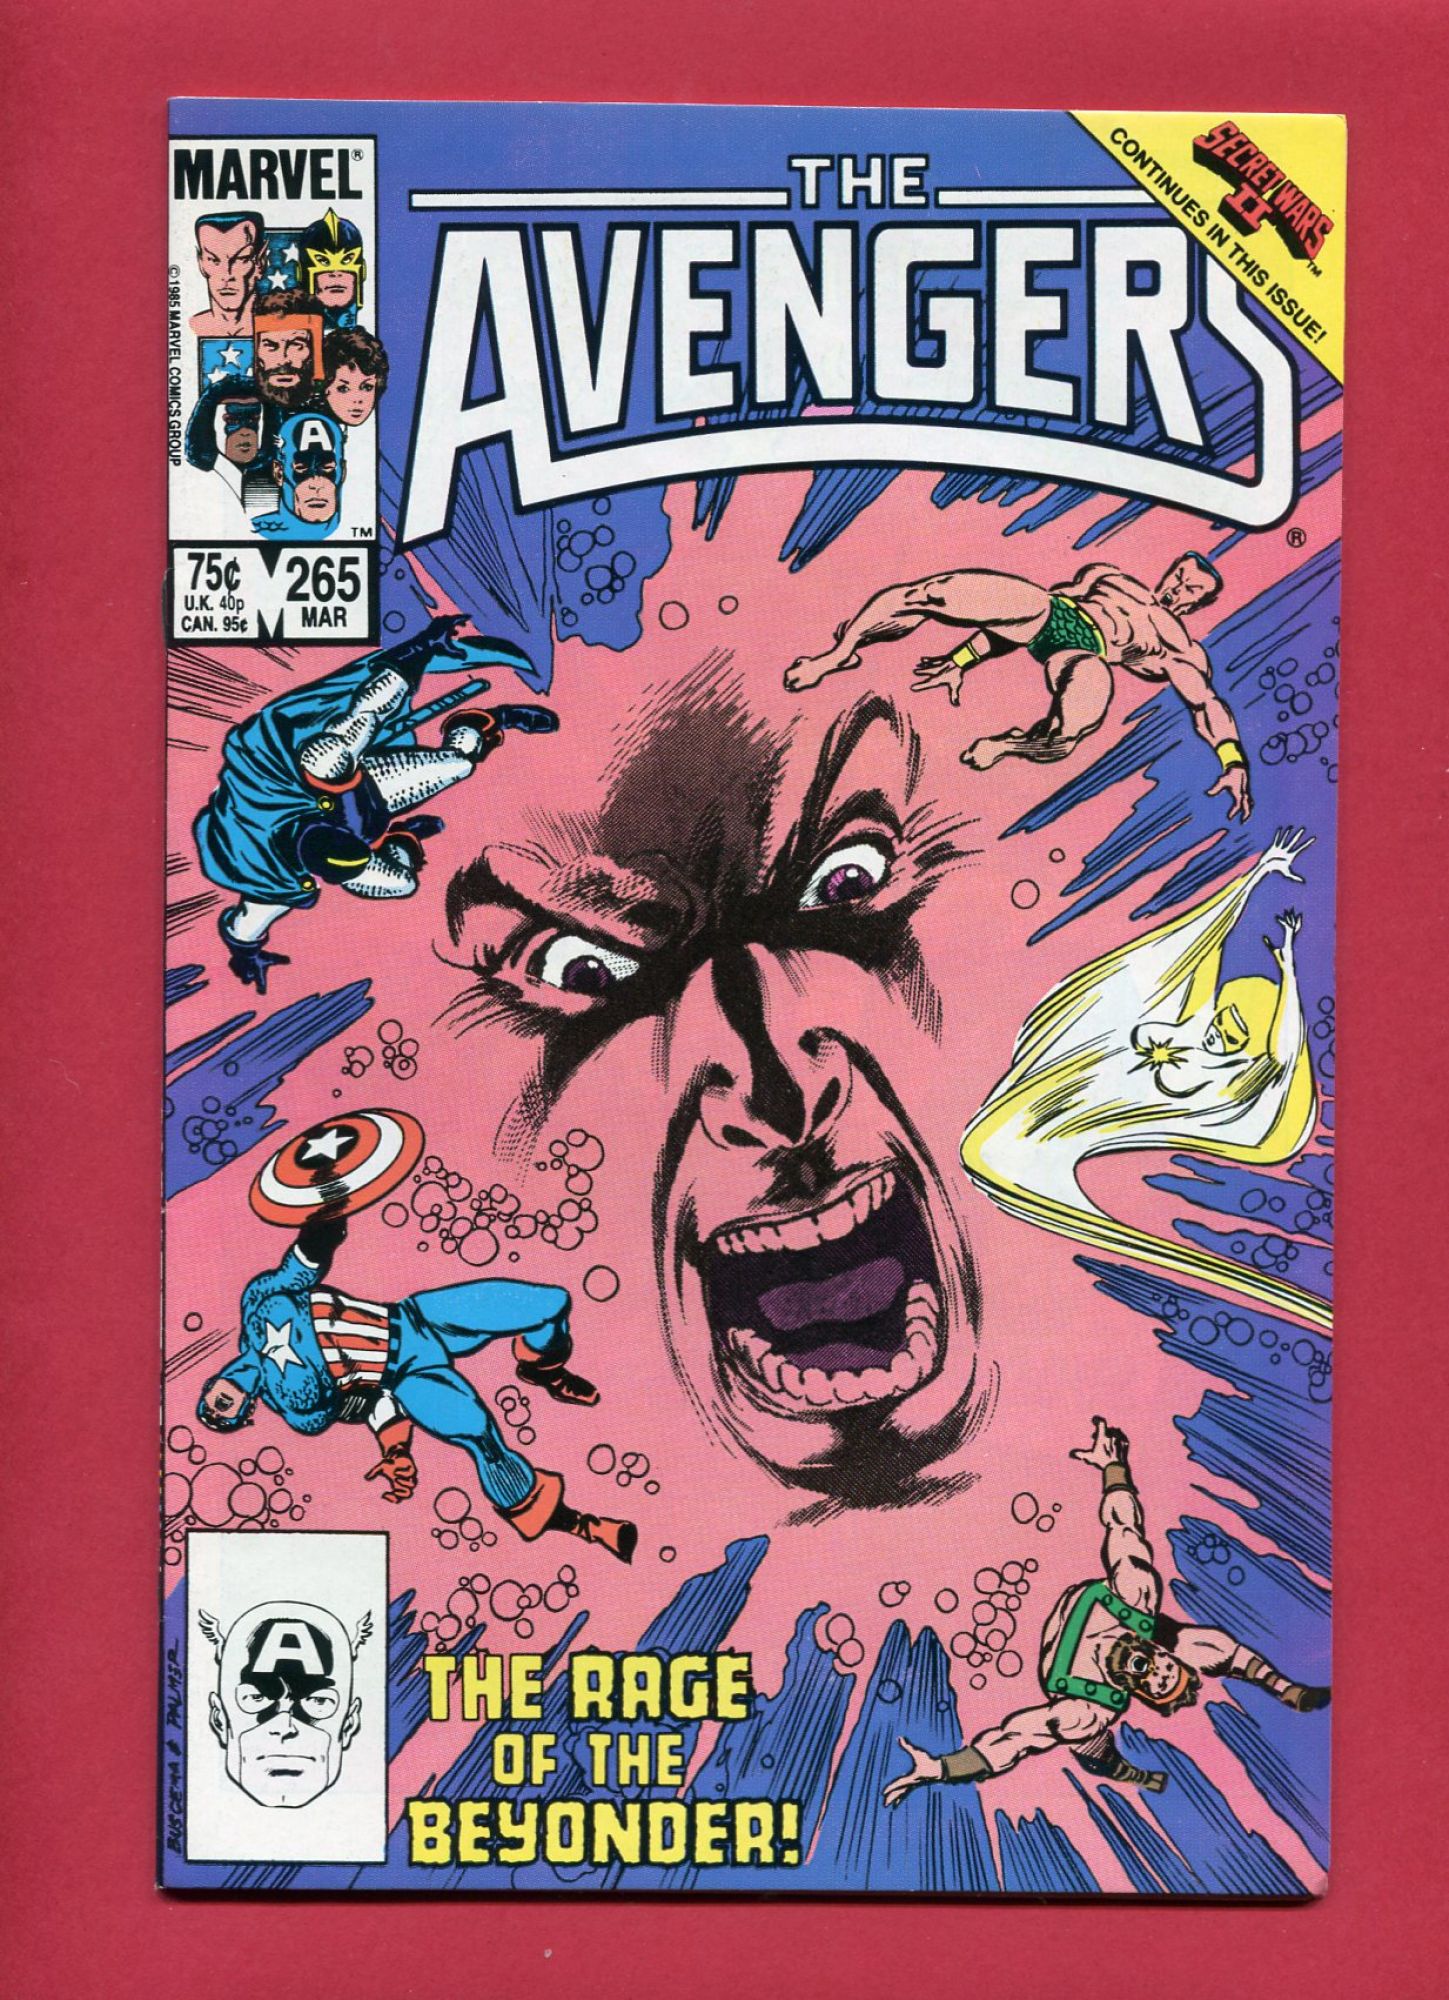 Avengers #265, Mar 1986, 8.5 VF+